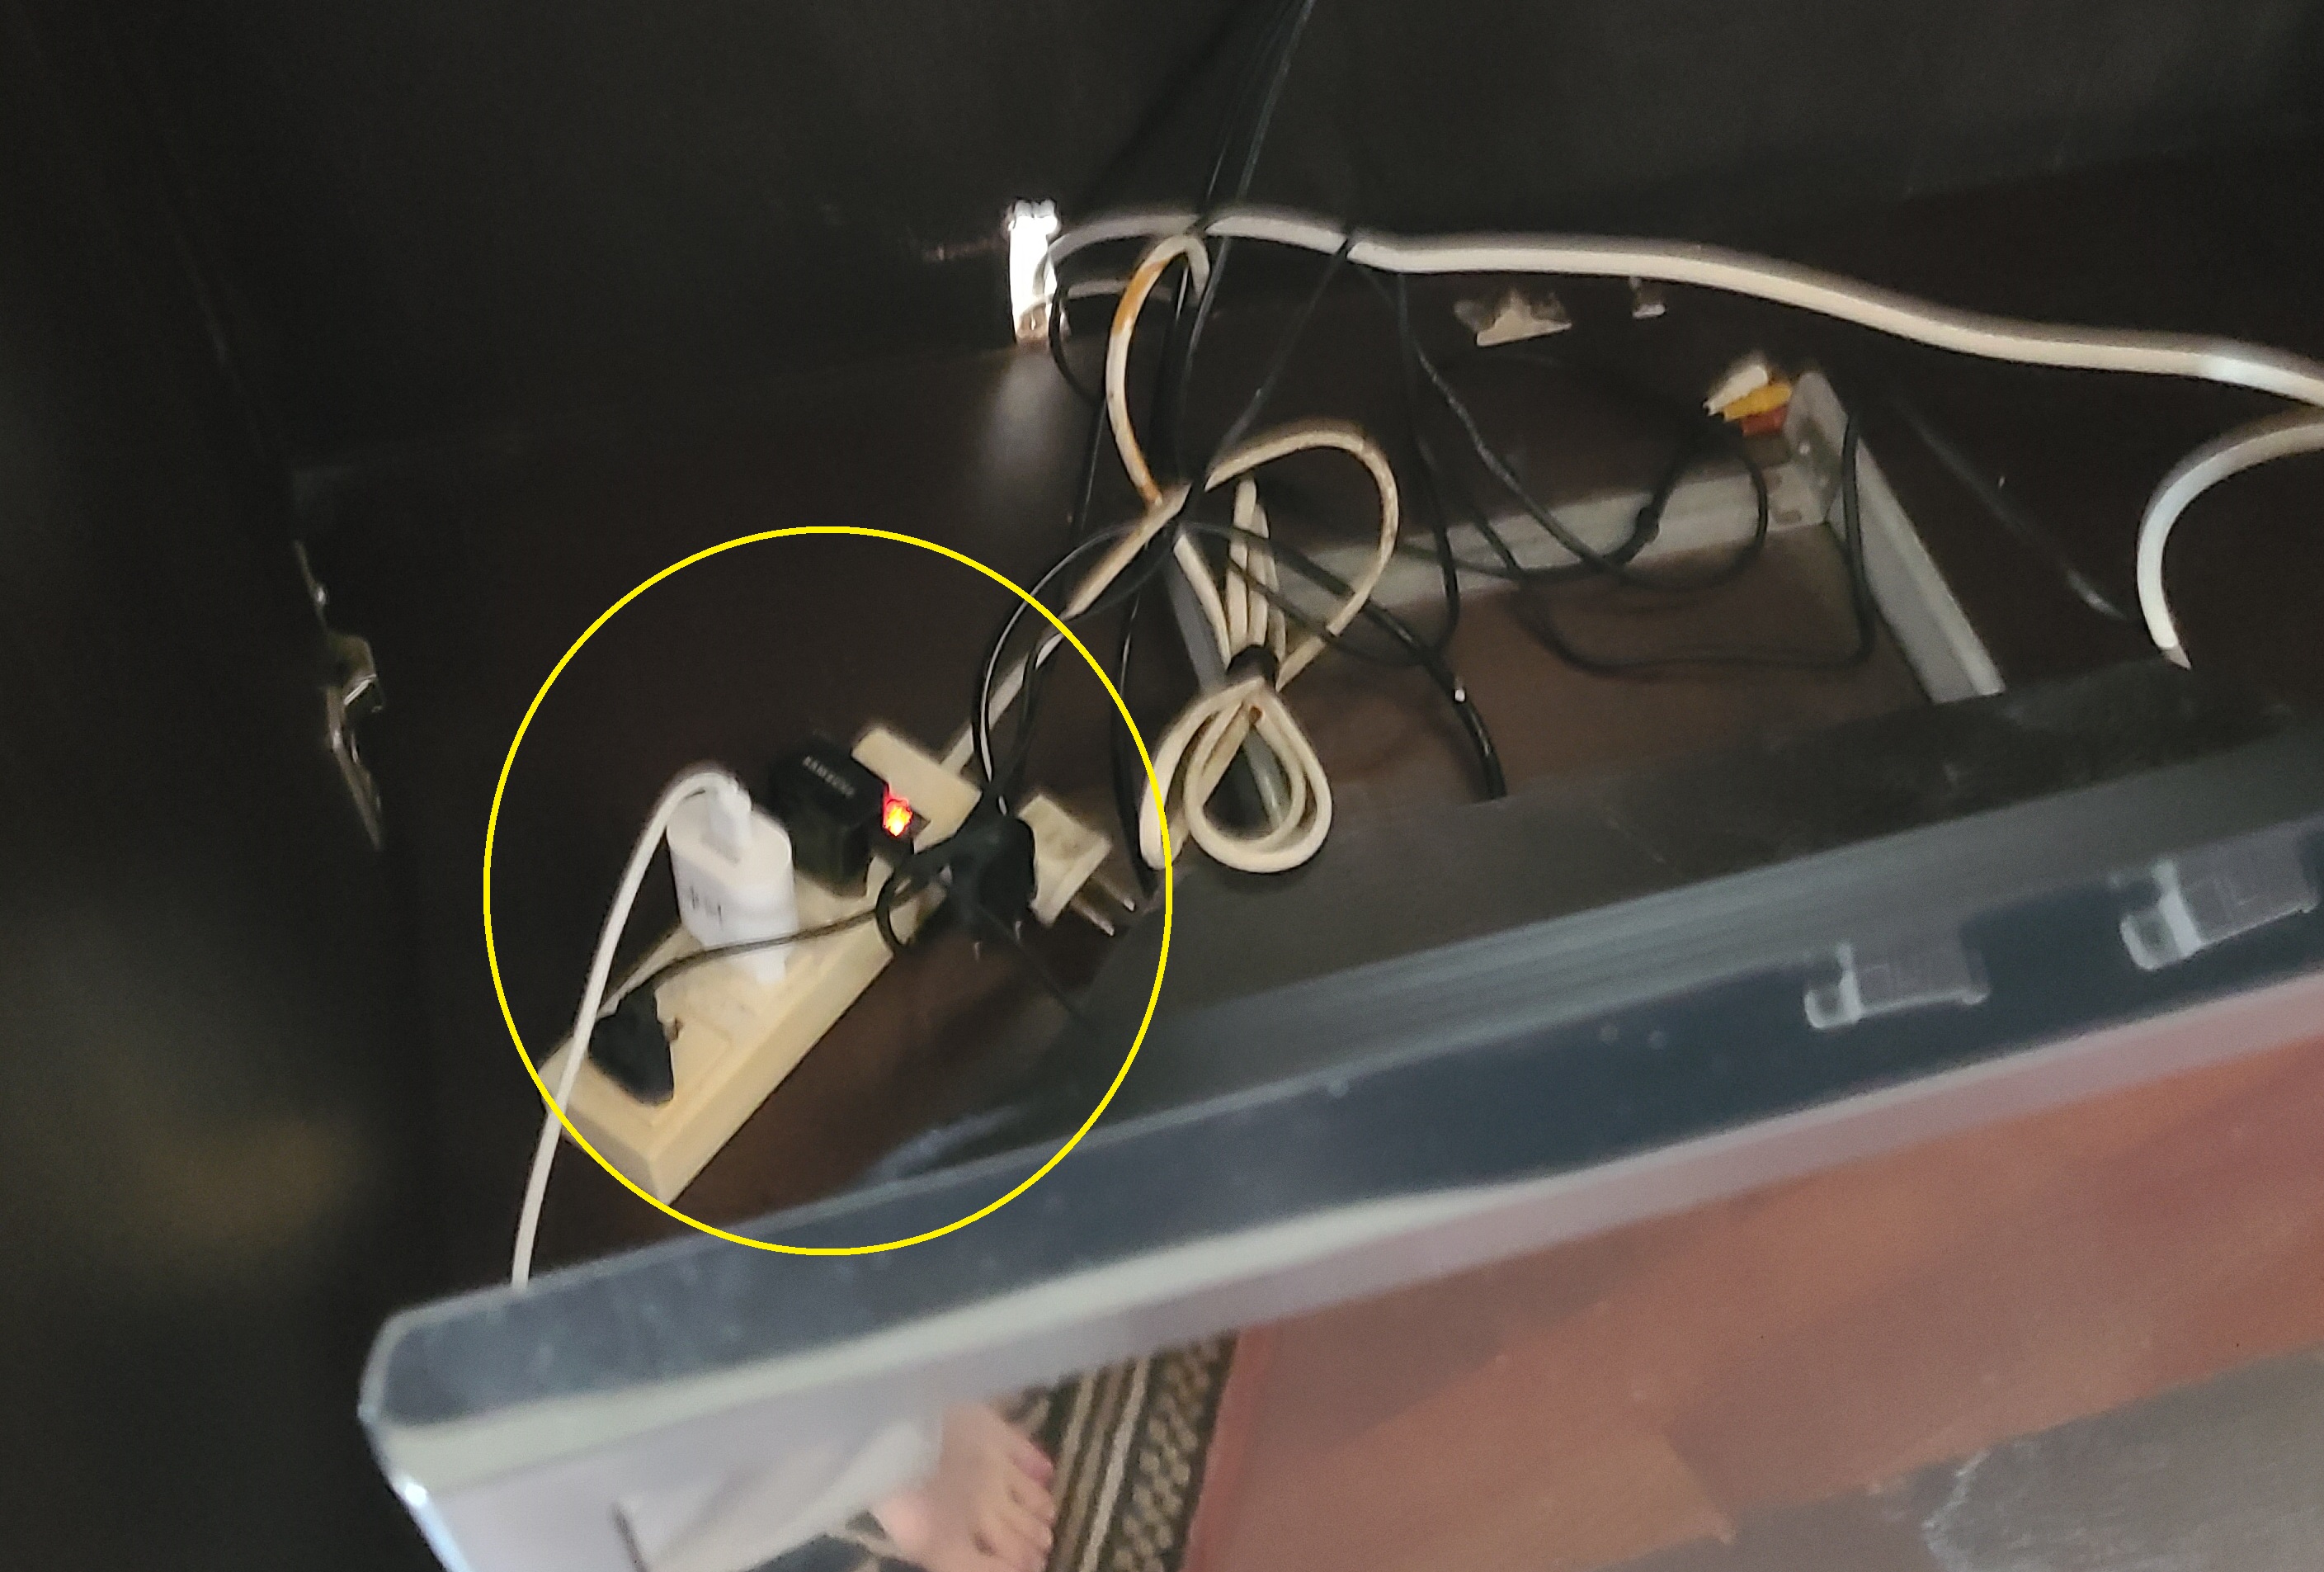 사용가능한 220V 콘센트가 TV 뒤 멀티탭에 3구 밖에 없어서 충전기를 여기에 연결해 둔 모습